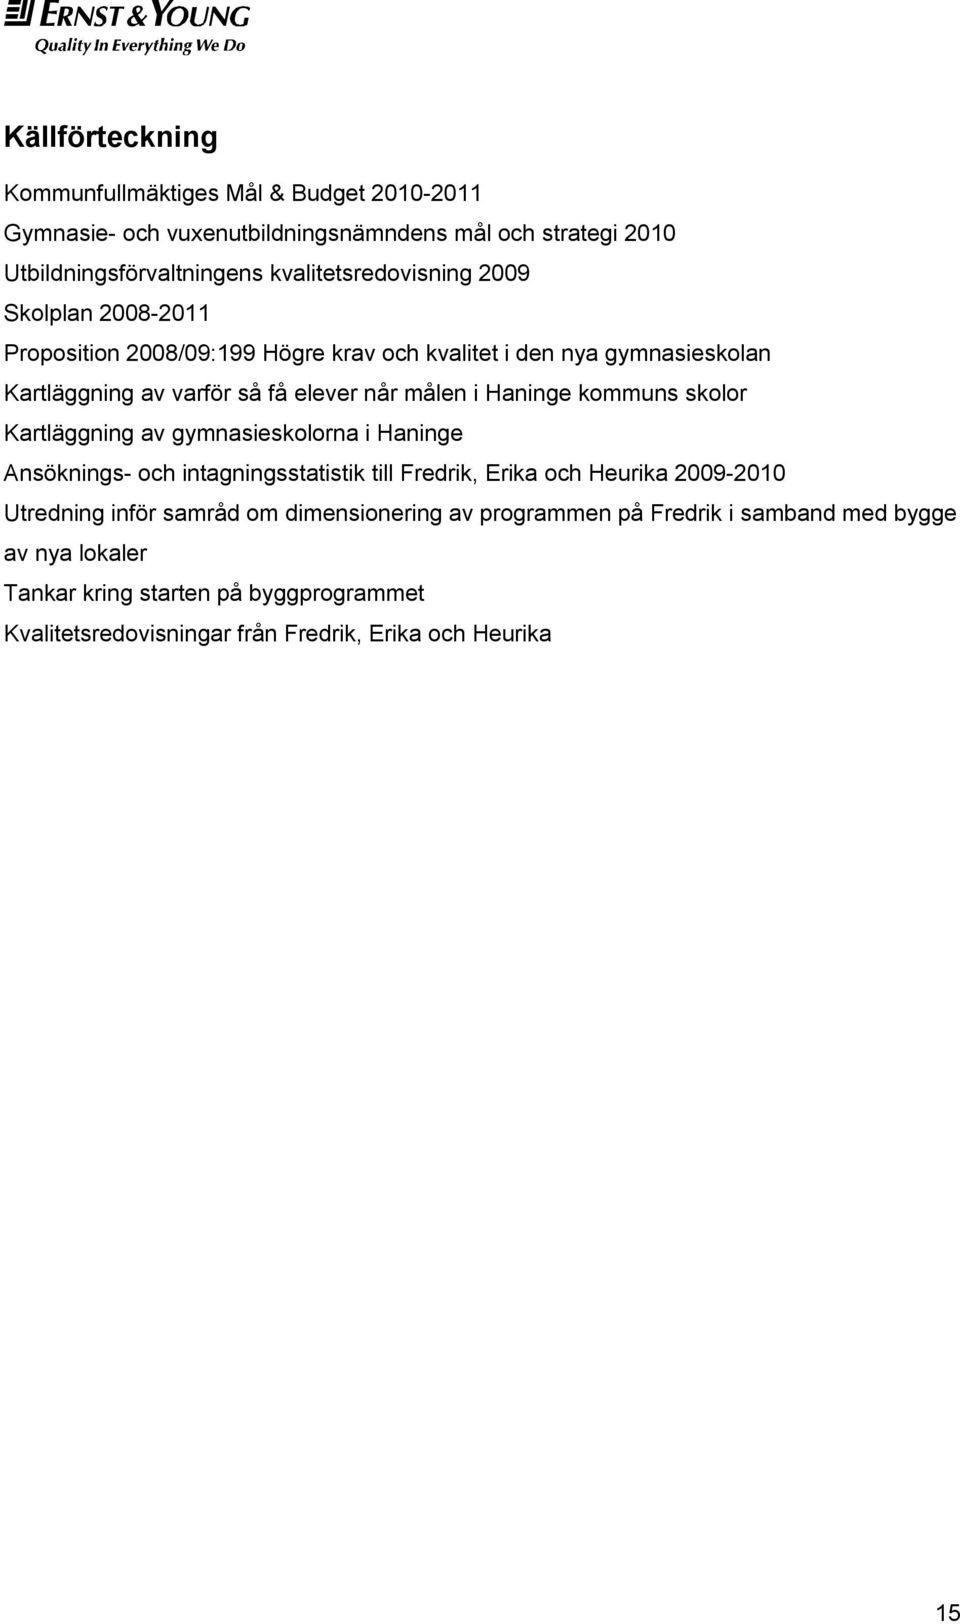 målen i Haninge kommuns skolor Kartläggning av gymnasieskolorna i Haninge Ansöknings- och intagningsstatistik till Fredrik, Erika och Heurika 2009-2010 Utredning